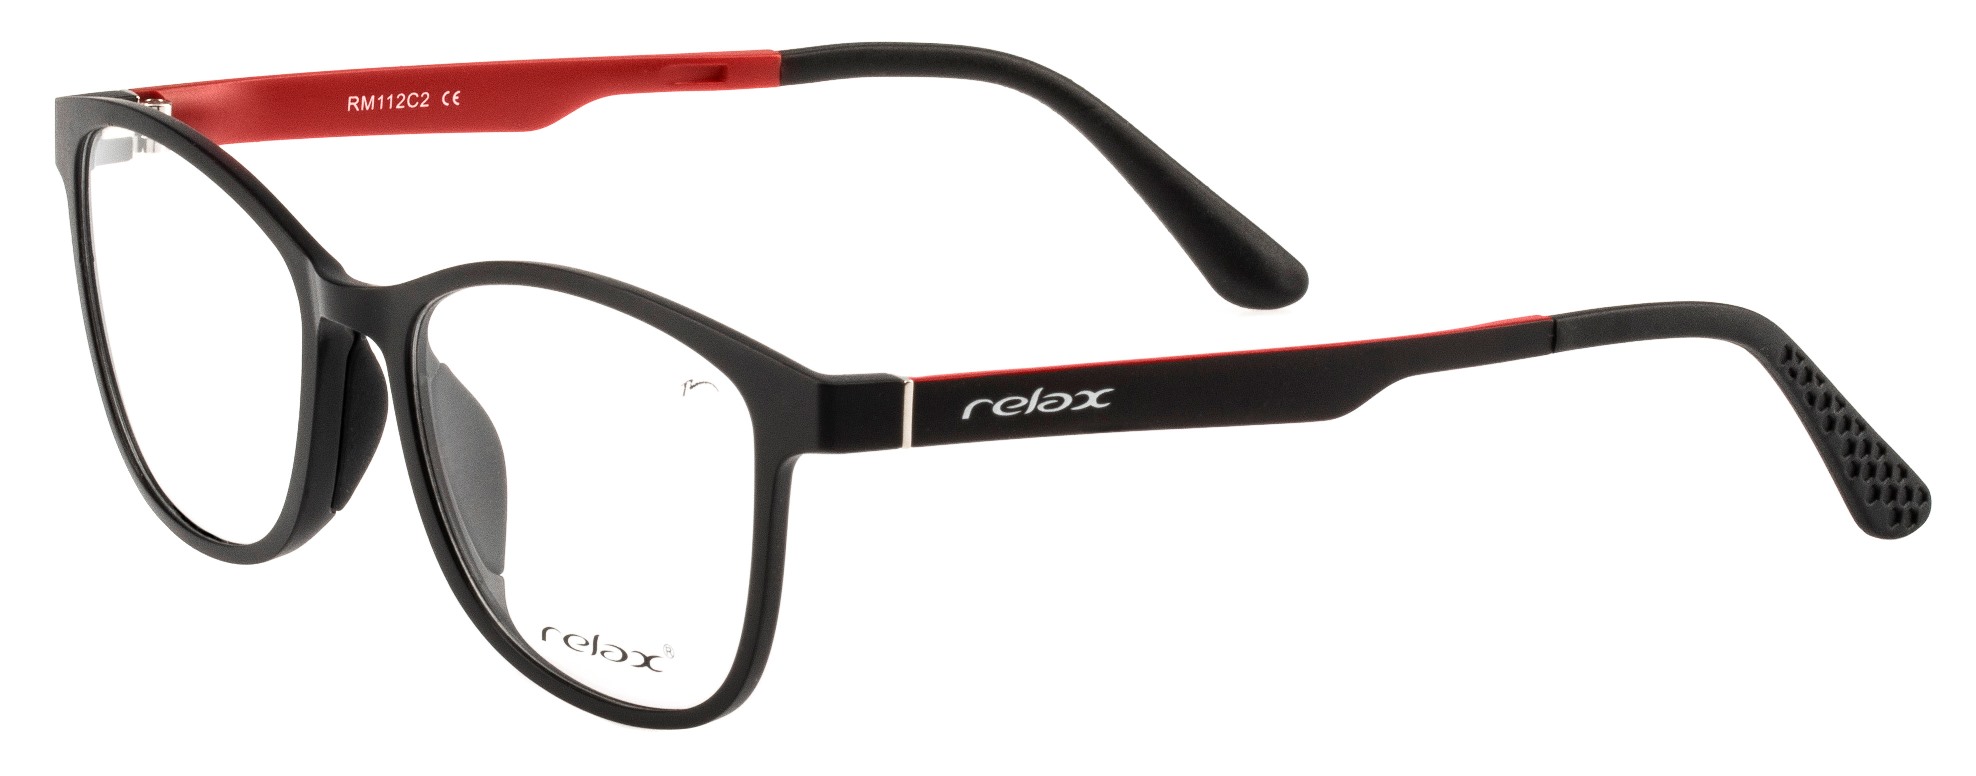 Dioptrické brýle Relax Ocun RM112C2 -